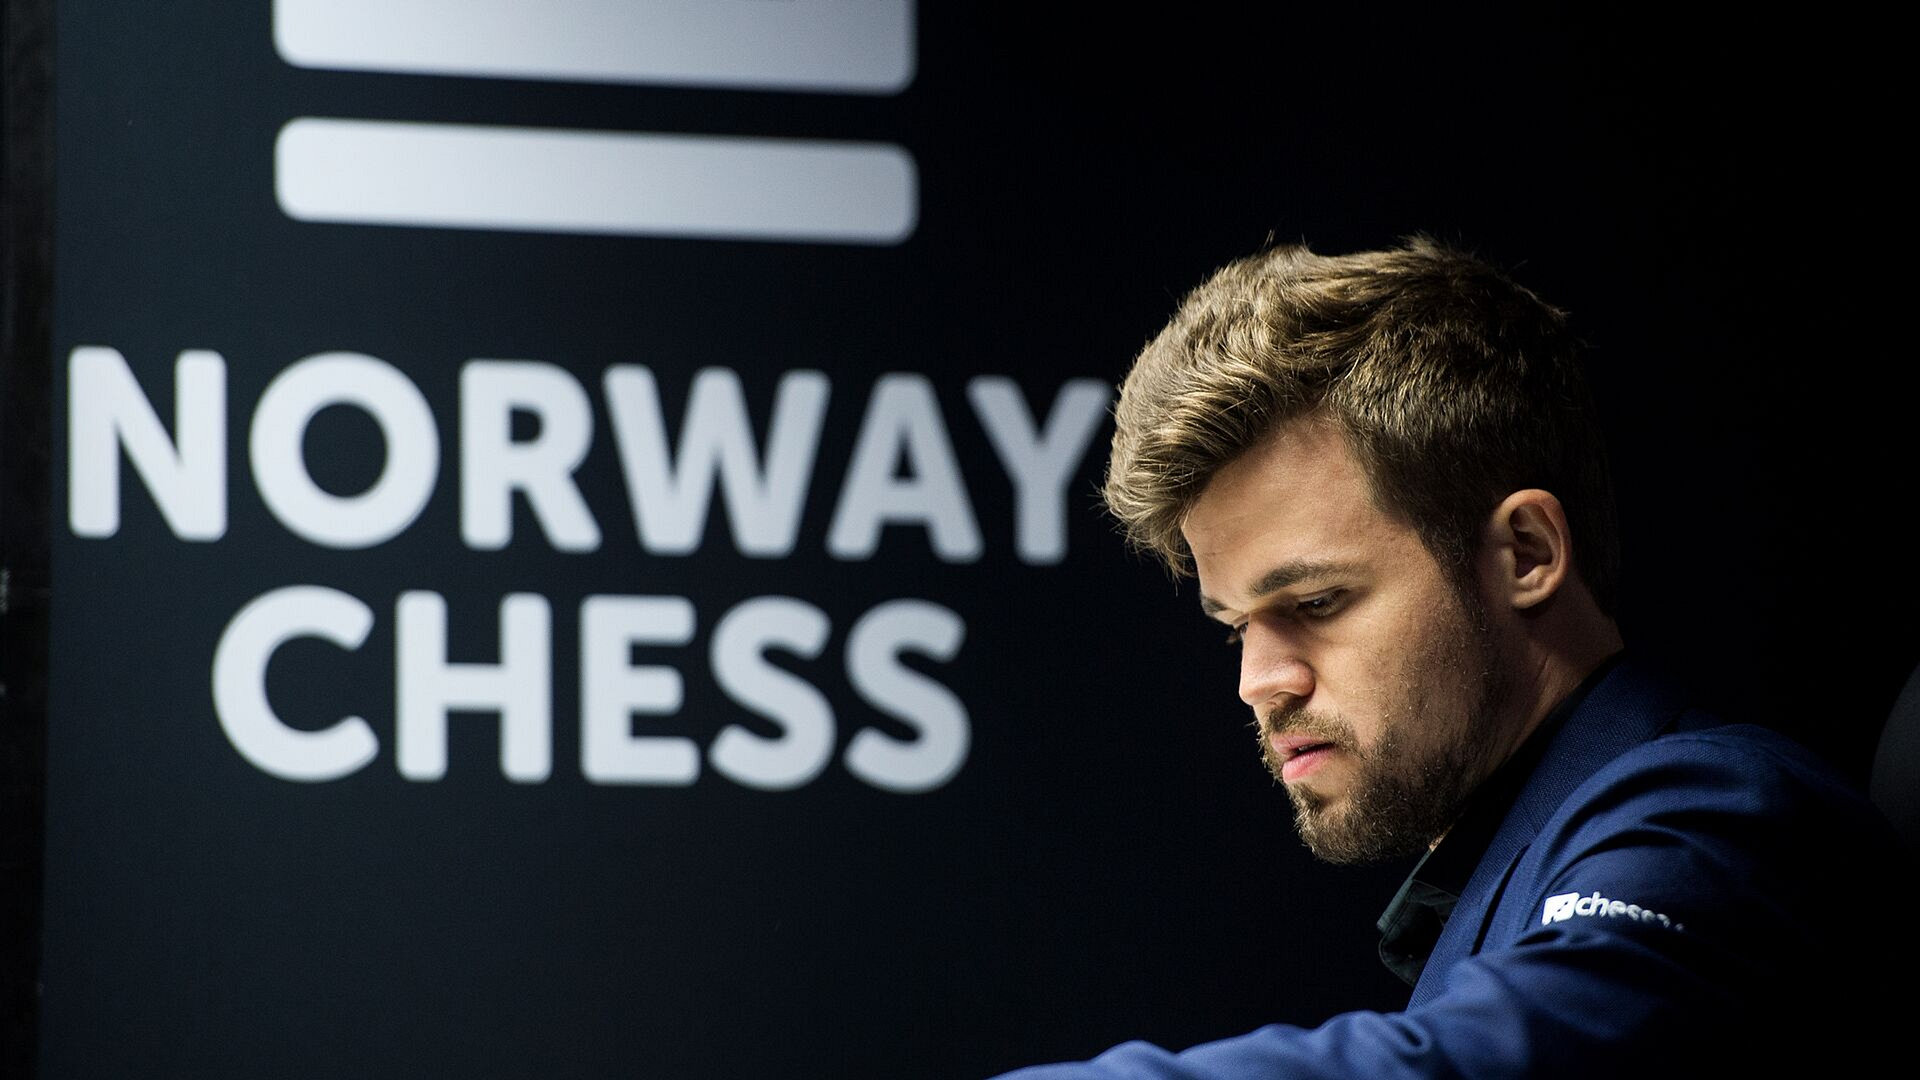 Norway Chess